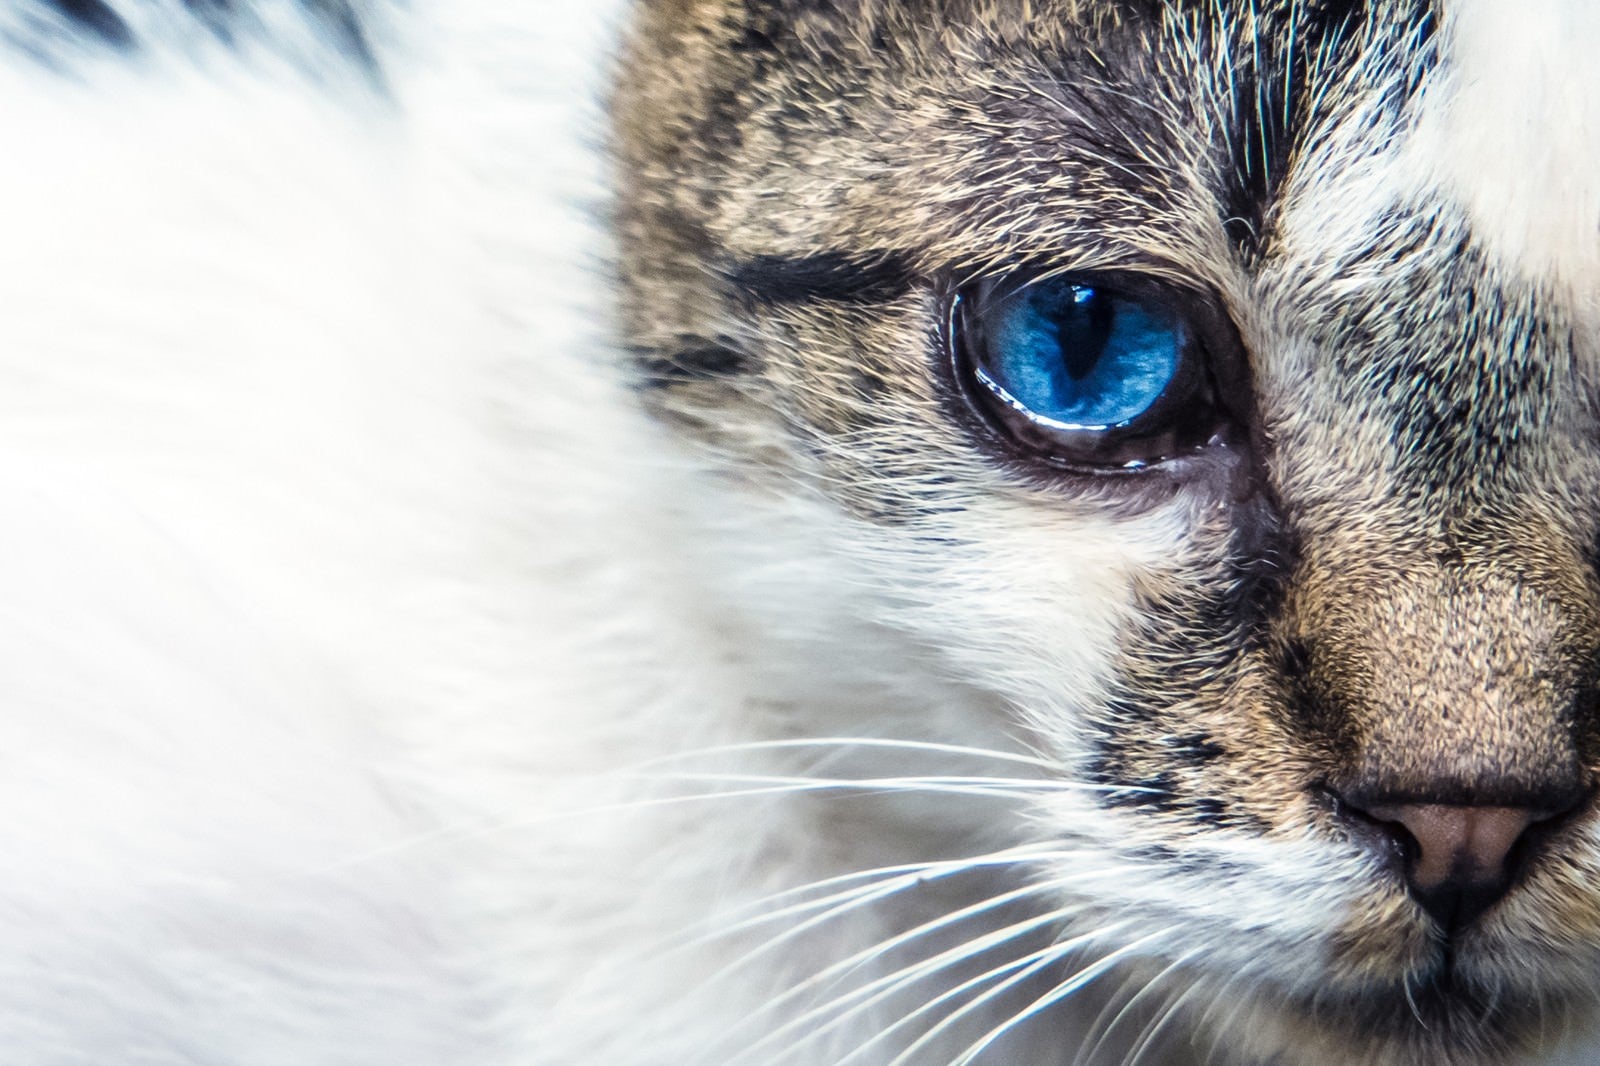 「蒼眼の猫」の写真